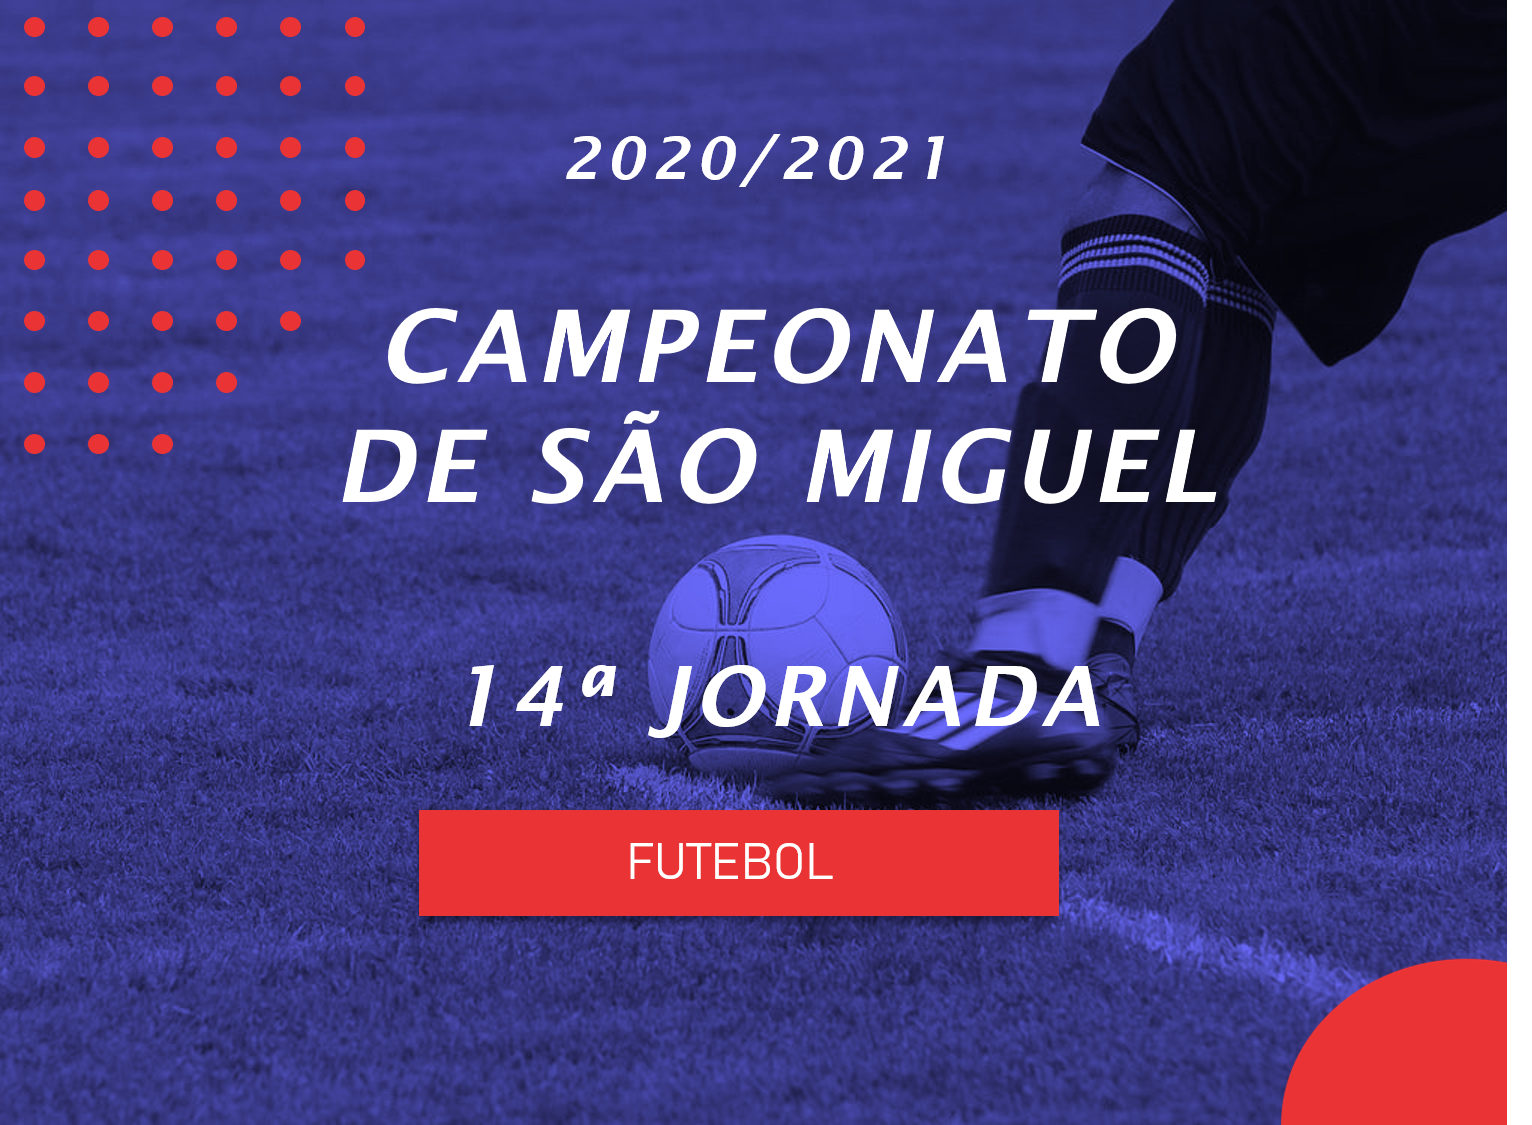 Campeonato de São Miguel - 14ª Jornada - Antevisão